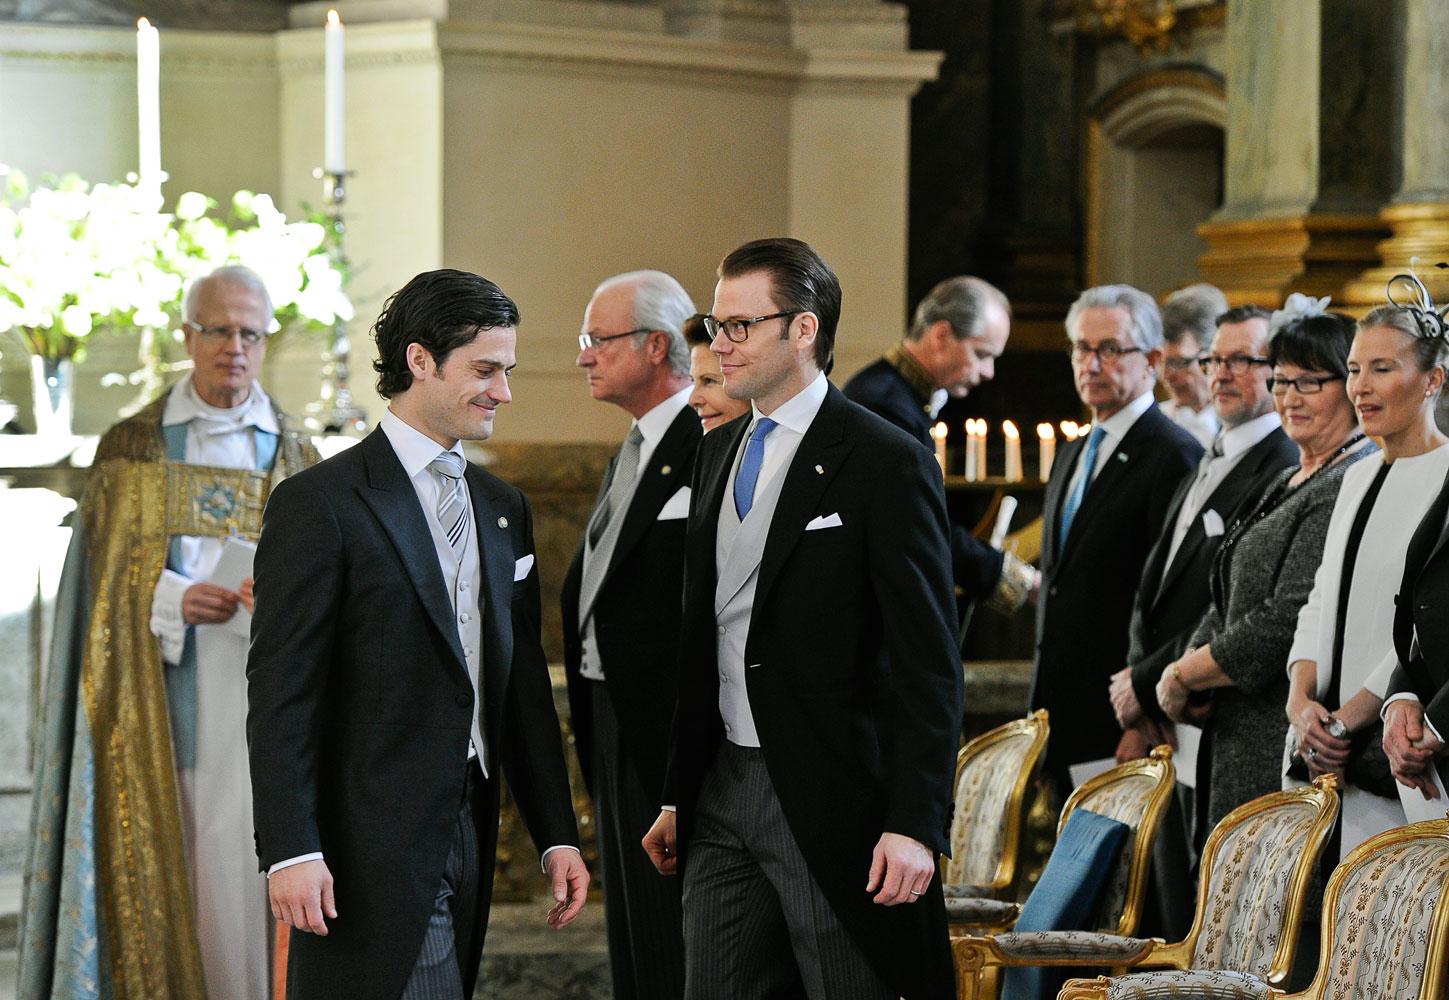 Prins Carl Philip och prins Daniel gör sig redo för gudstjänsten i Slottskyrkan.